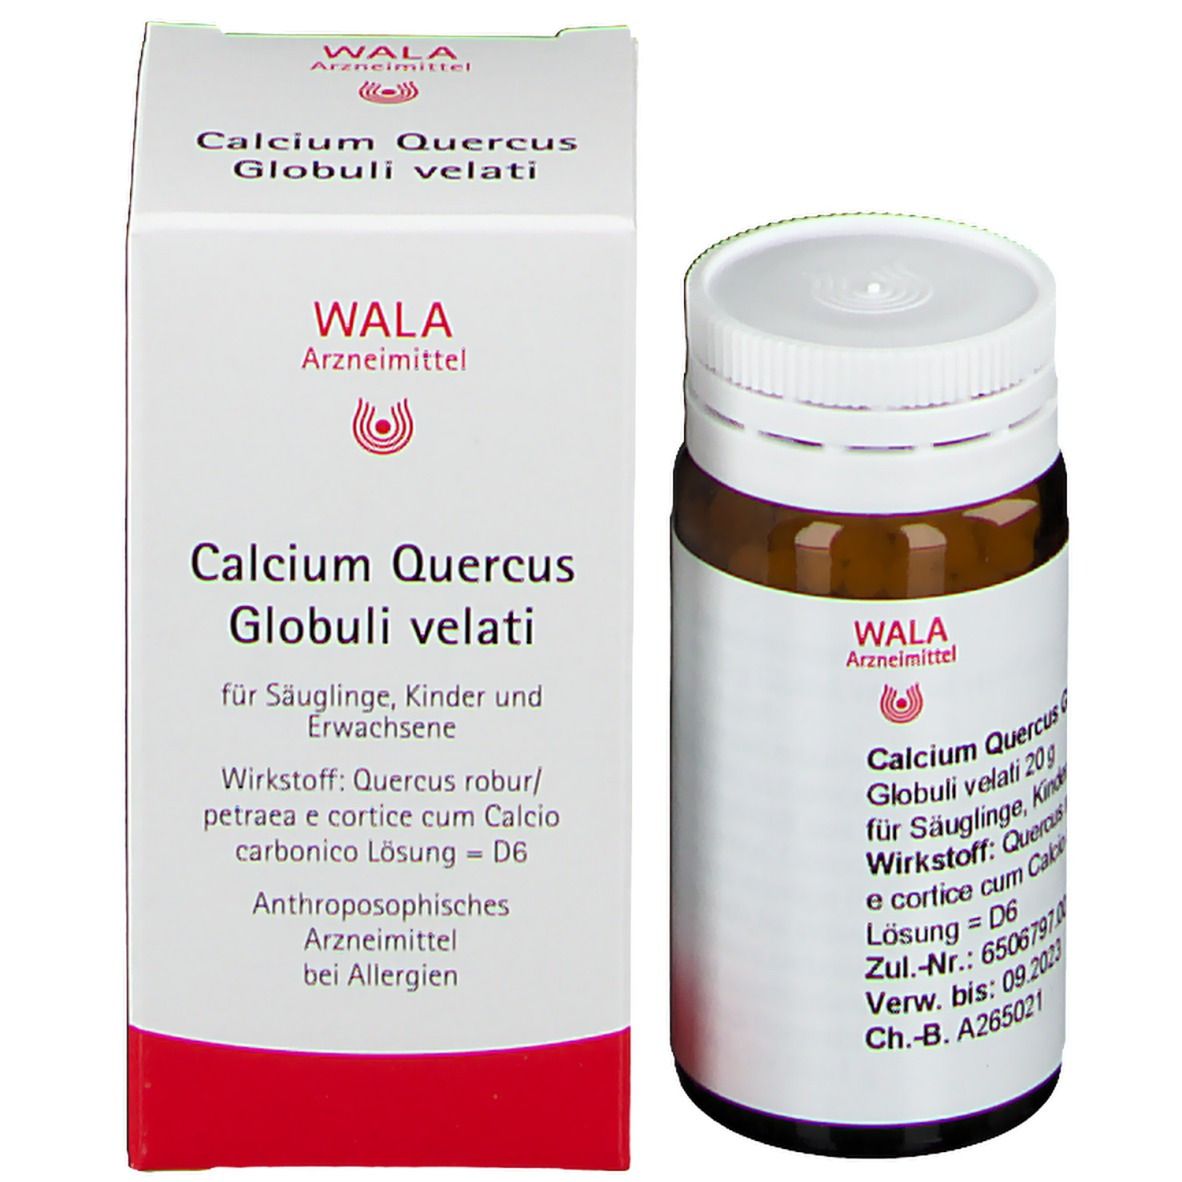 WALA® Calcium Quercus Globuli velati